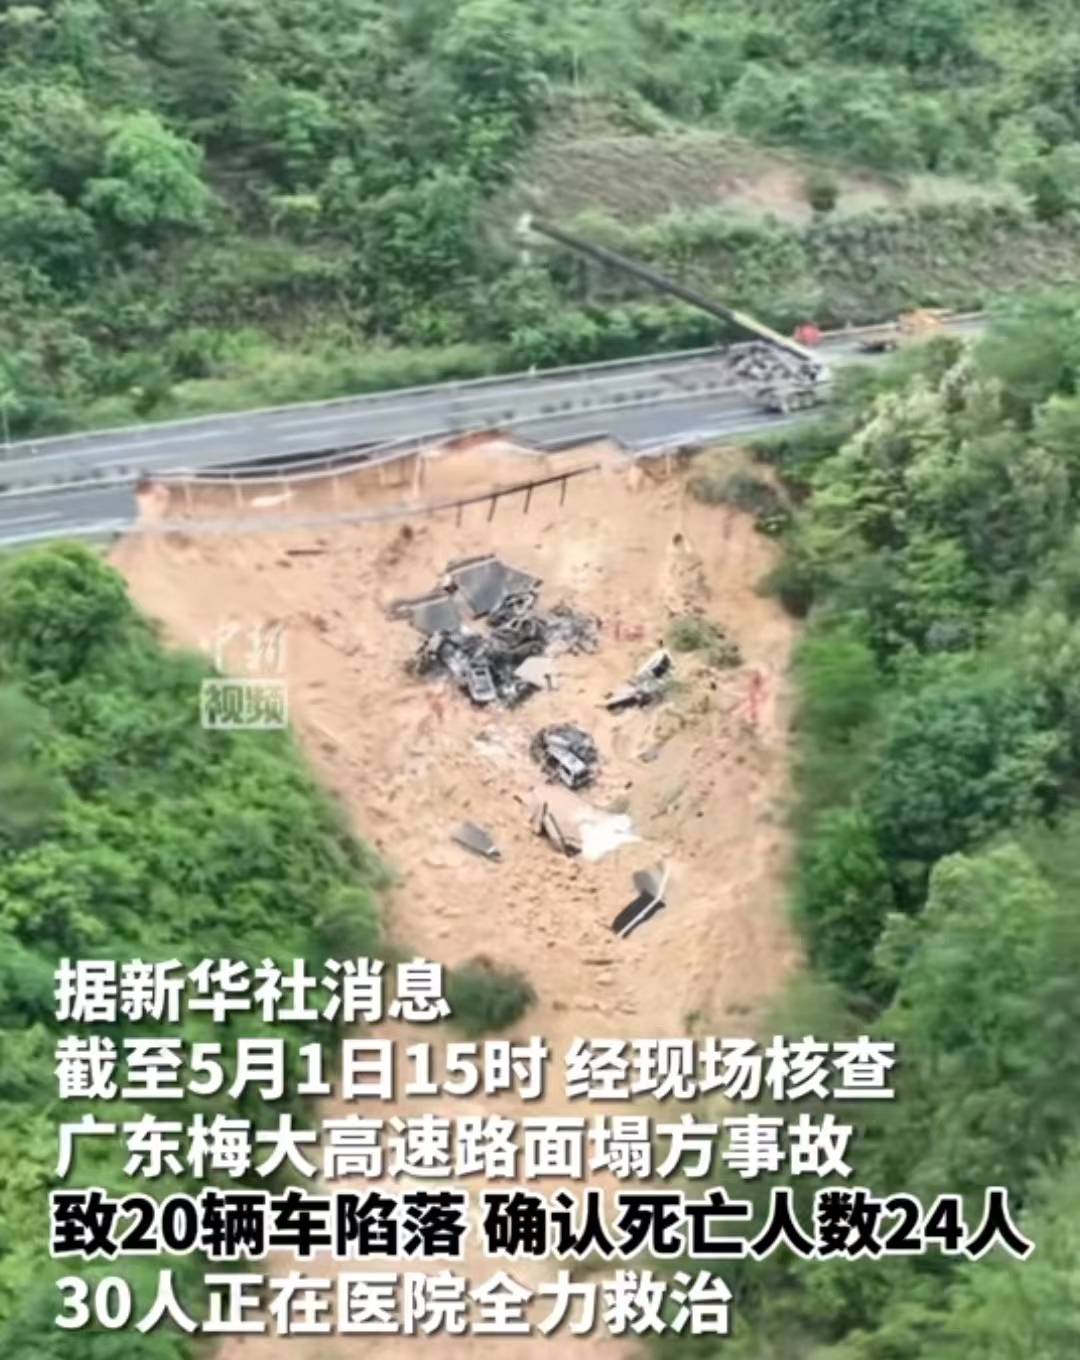 广东高速地面塌陷,19人死亡30多人受伤,塌陷原因或为天灾!